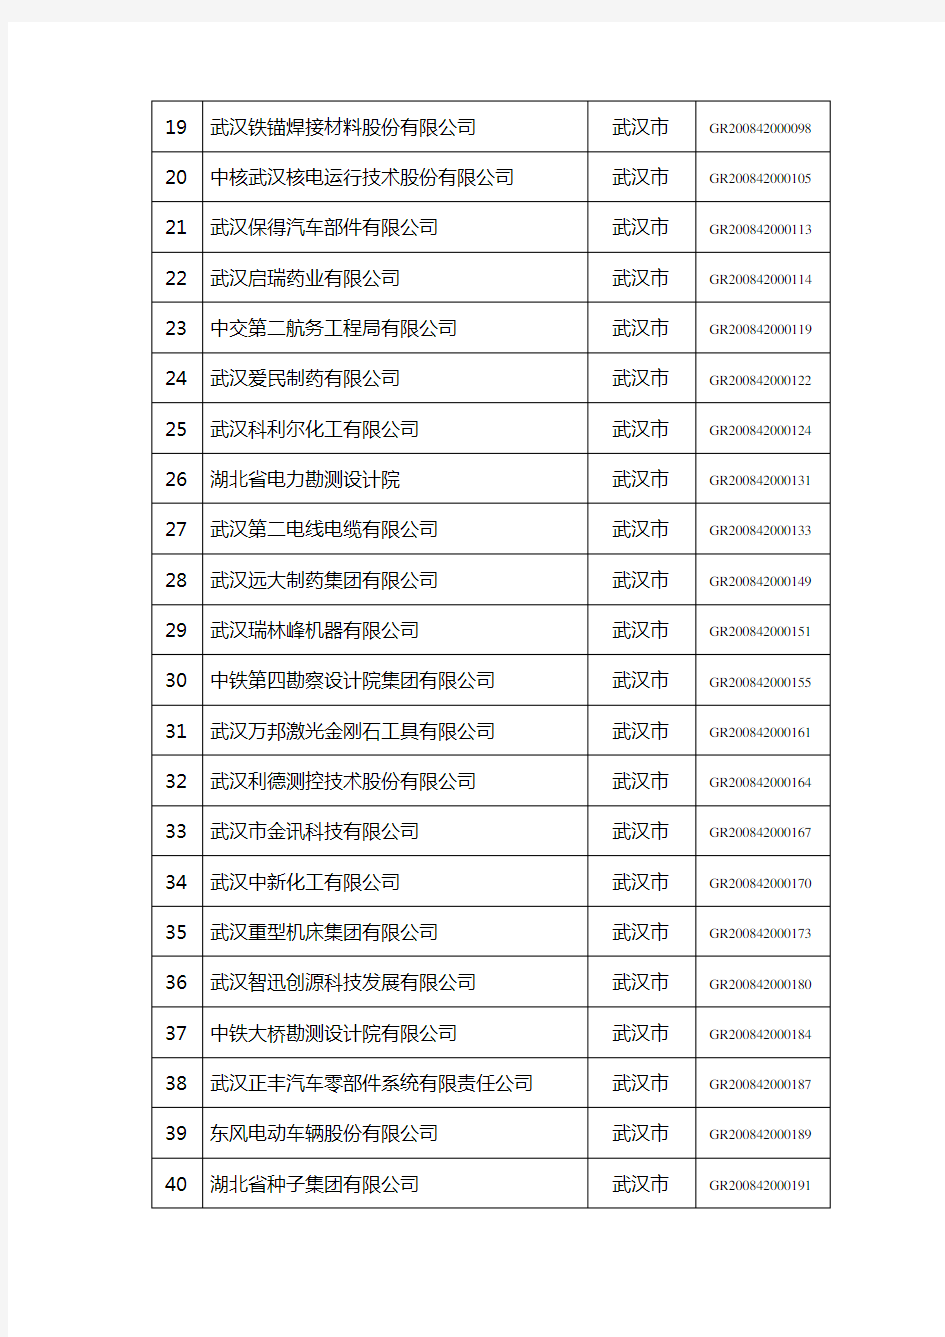 湖北省高新技术企业名单(DOC)